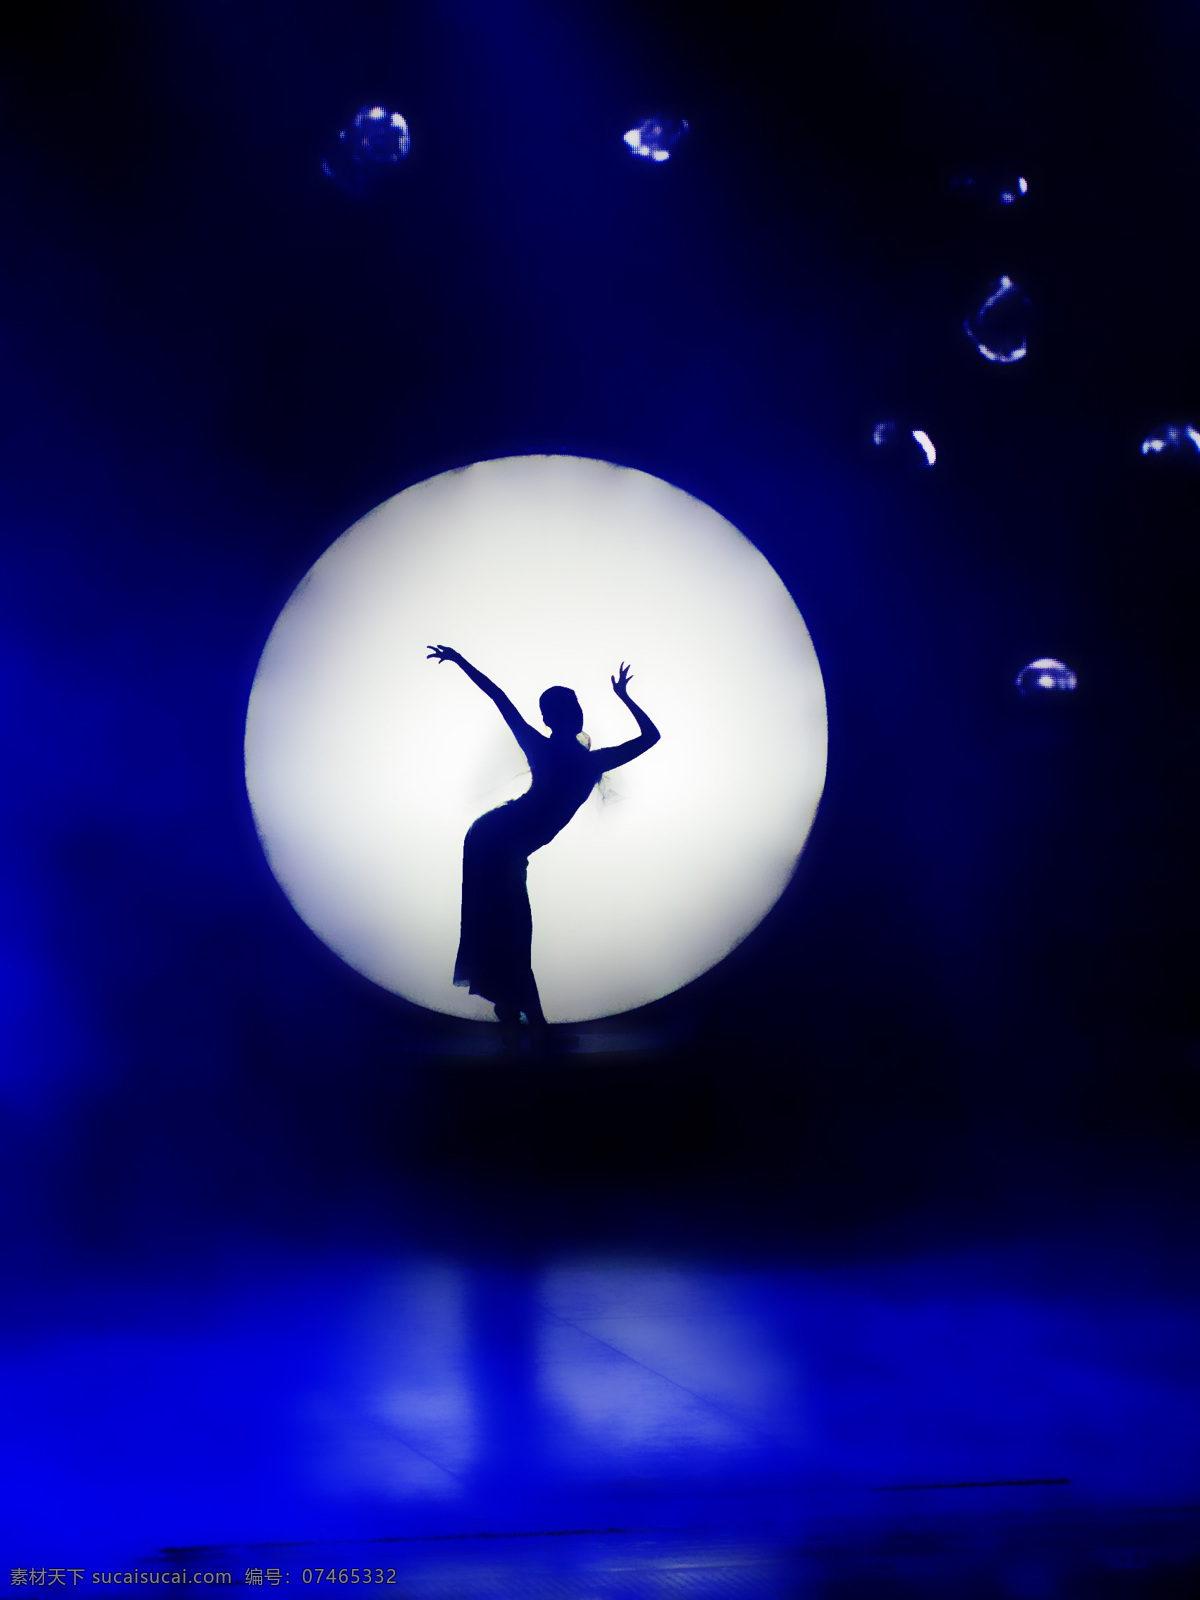 舞蹈图片 蓝色 女 跳舞 文化艺术 舞蹈 舞蹈音乐 月亮 舞蹈设计素材 舞蹈模板下载 姿势 舞蹈家